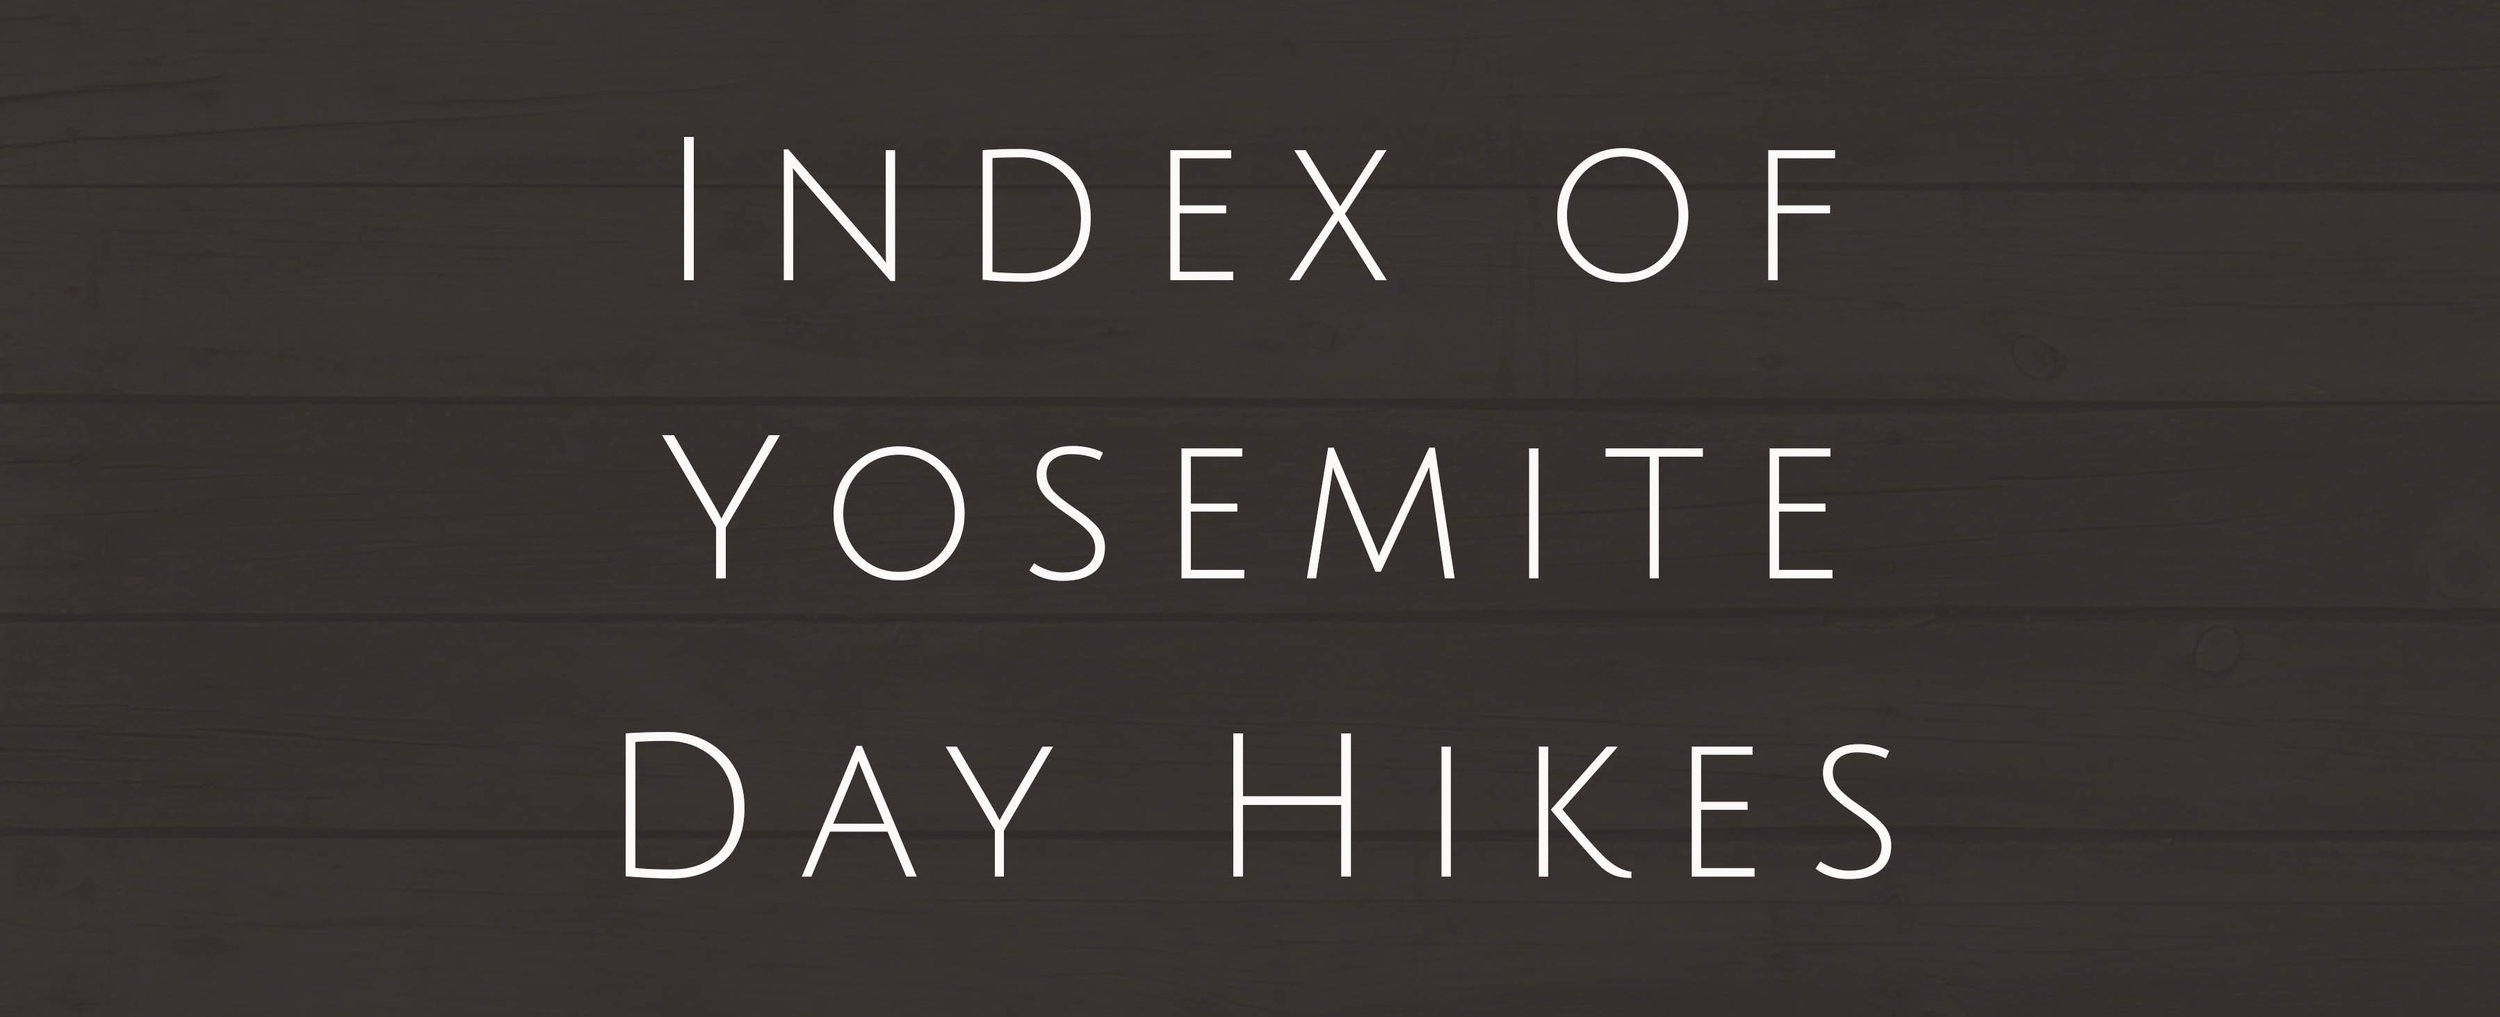 Yosemite - Index Day Hikes.jpg